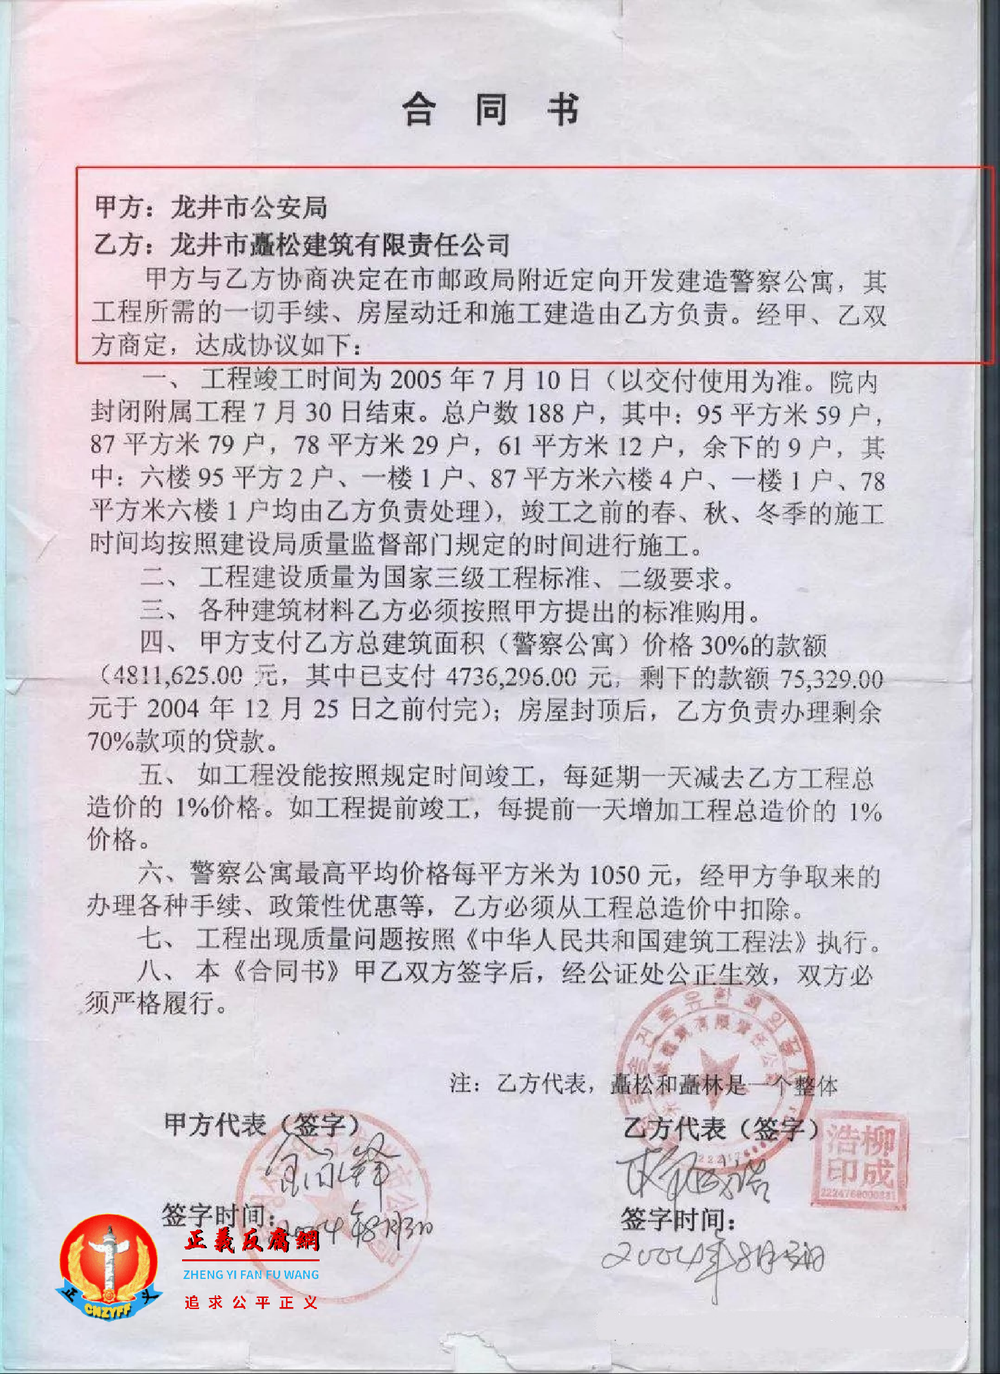 2004年8月3日，龙井市公安局（简称甲方）代表人金永锋与龙井矗松建筑有限公司（简称乙方）代表人柳成浩正式签订了承建《警察公寓》的合同书。.png